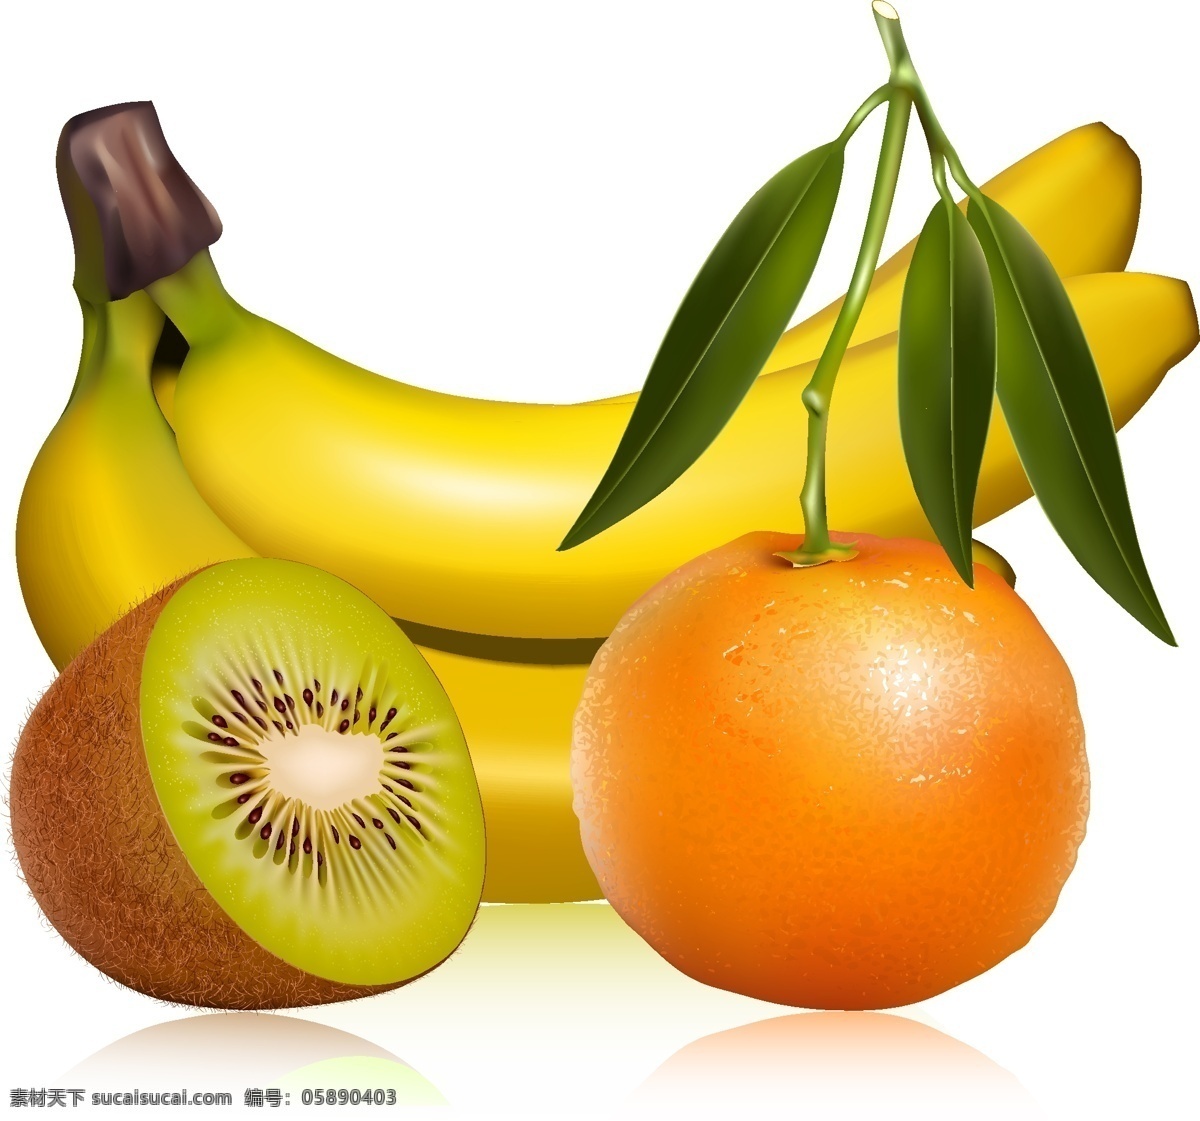 矢量 水果 设计素材 矢量图 橘子 绿叶 猕猴桃 矢量素材图片 香蕉 叶子 日常生活